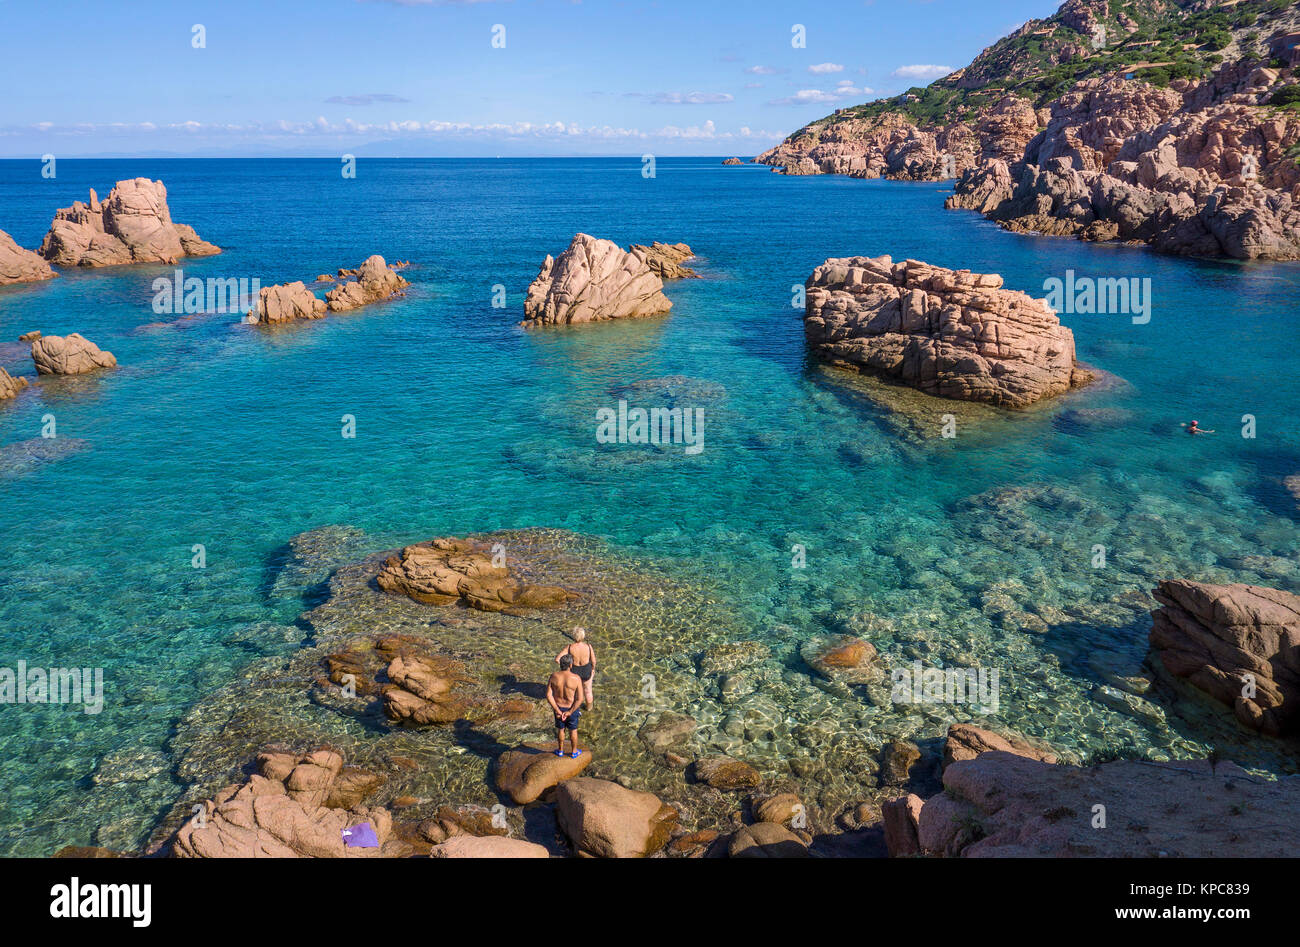 Spiaggia balneare a rocce di porfido, paesaggio della Costa a Costa Paradiso, Sardegna, Italia, mare Mediterraneo, Europa Foto Stock